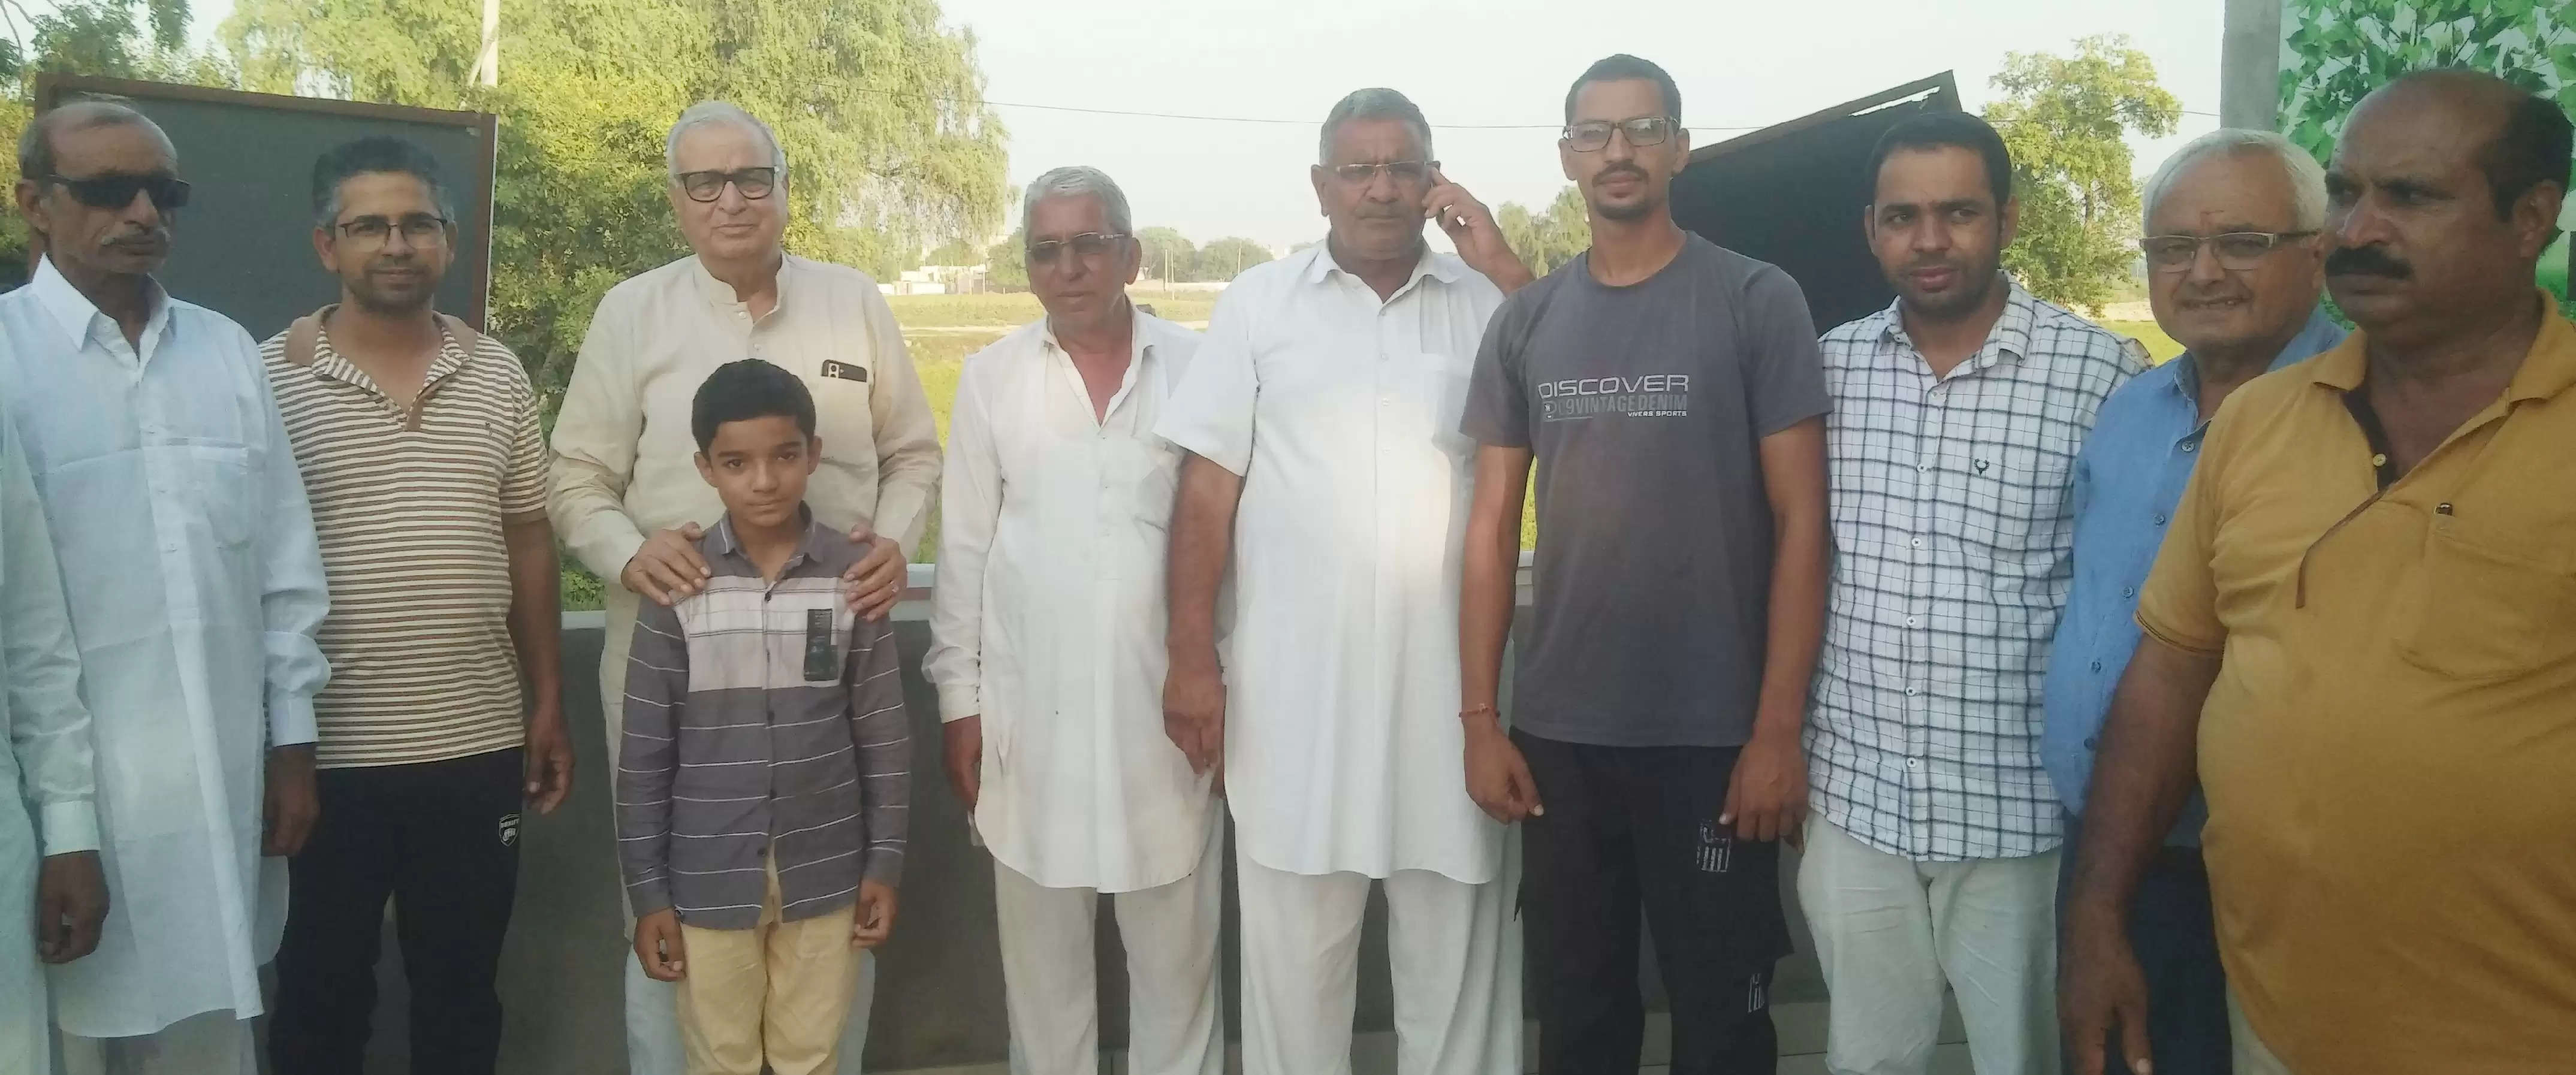 वरिष्ठ कांग्रेस नेता वीरभान मेहता ने सिरसा जिले के अनेक गांवों का किया दौरा